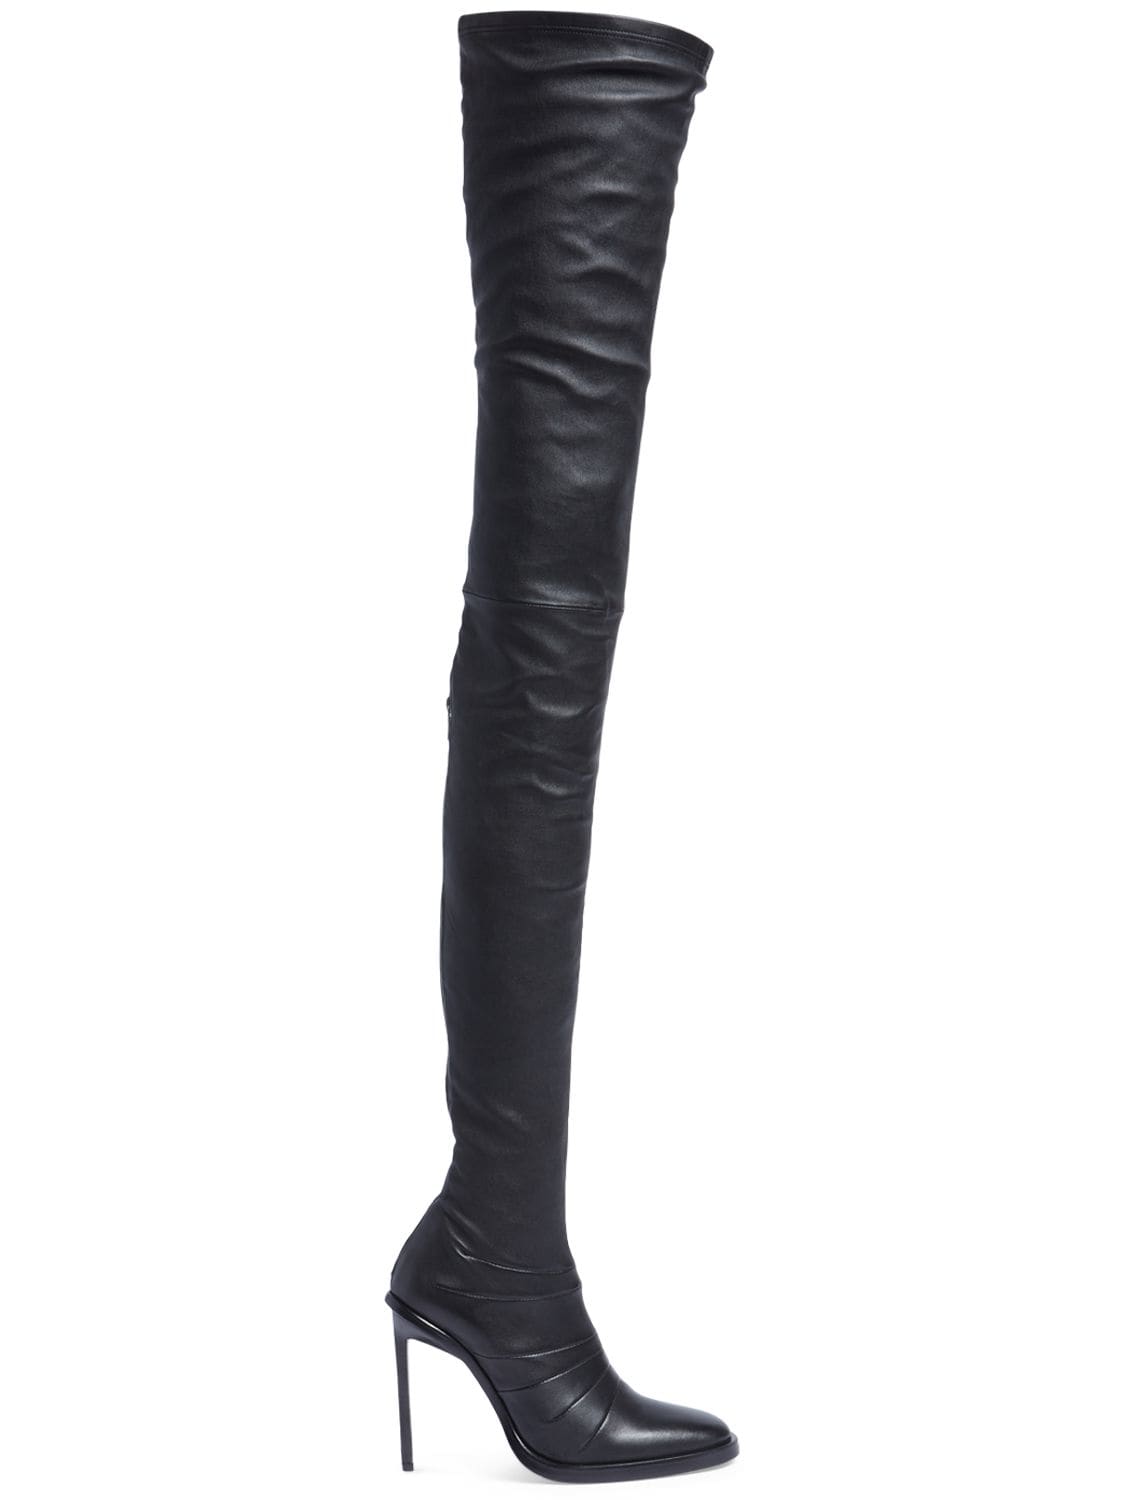 Mm Adna Leather High Heel Boots - ANN DEMEULEMEESTER - Modalova